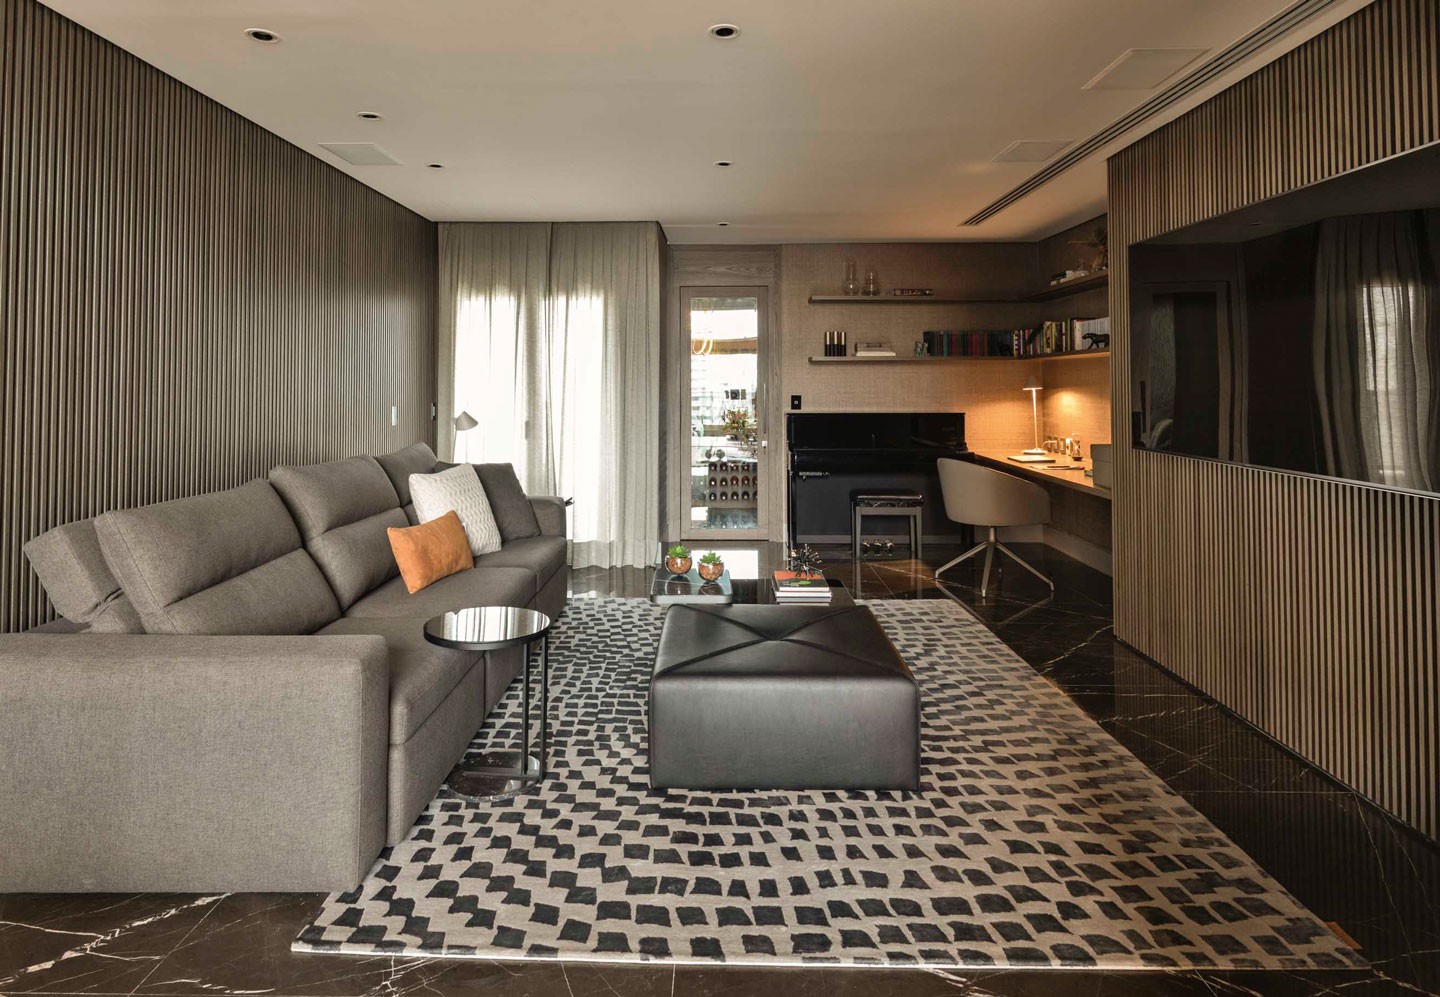 Doses de cor, formas elegantes e estampas expressivas em apartamento de 275 m² (Foto: Ruy Teixeira/divulgação)